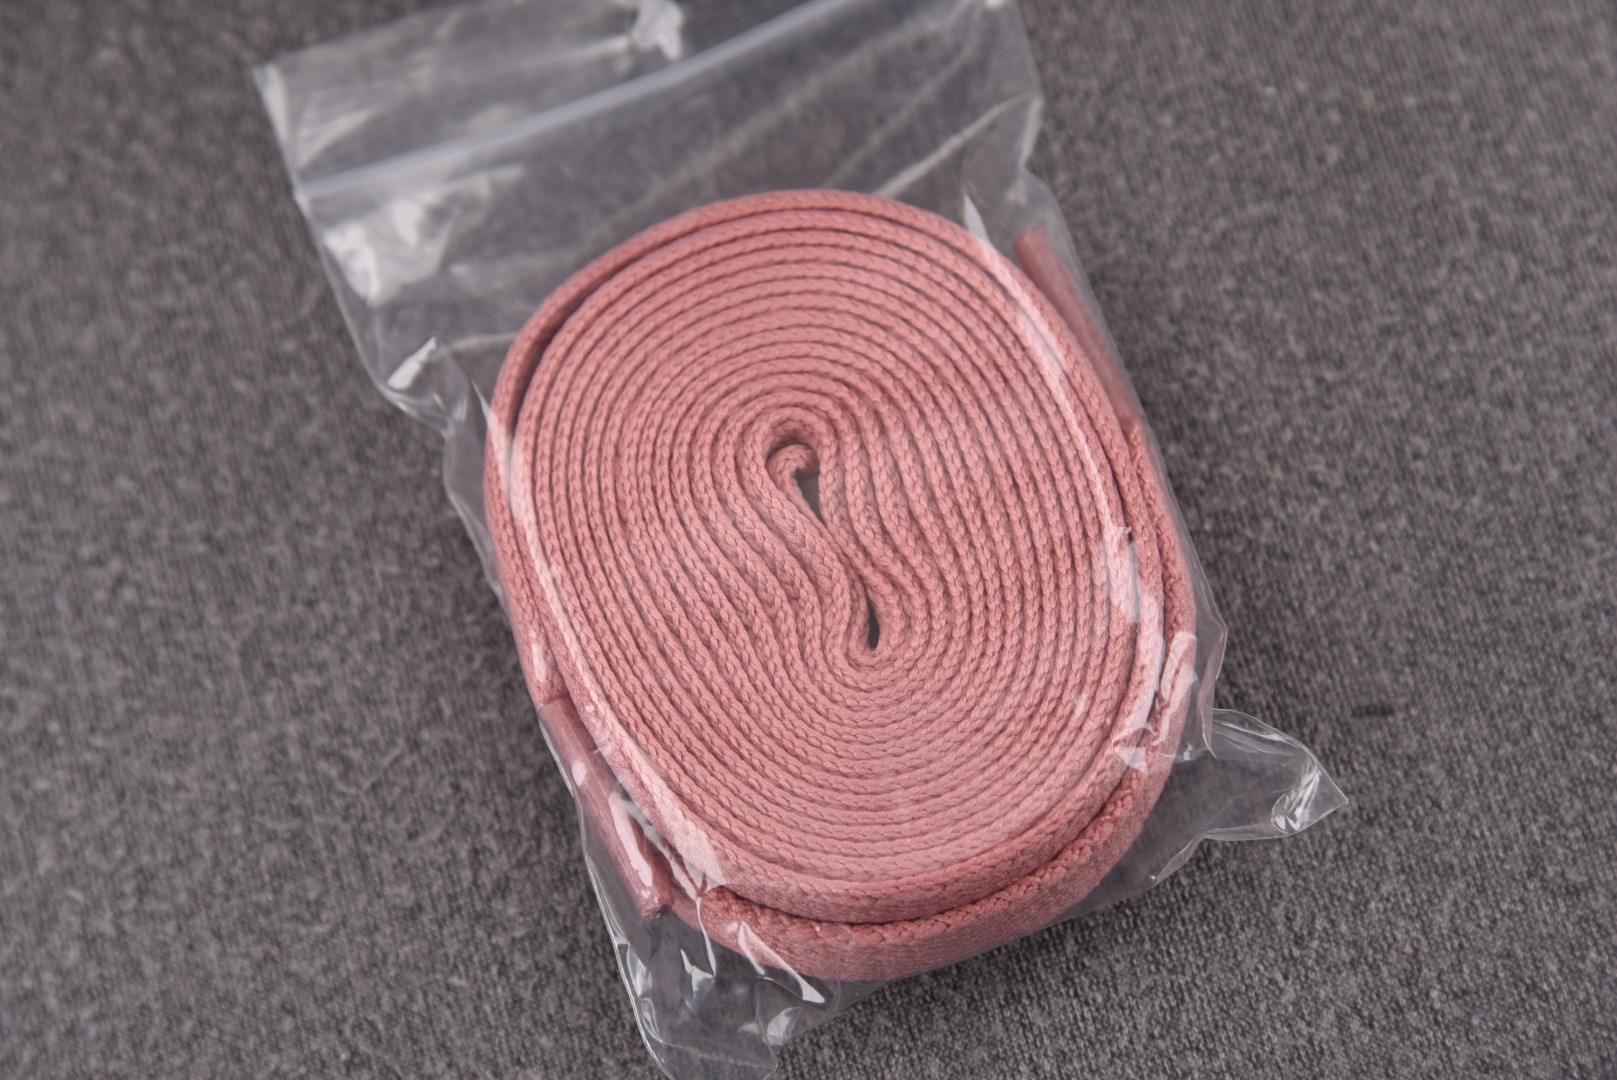 AJ1粉色尺码:40-47.5总裁R版出品-AirJordan1RetroHigh“RustPink”粉